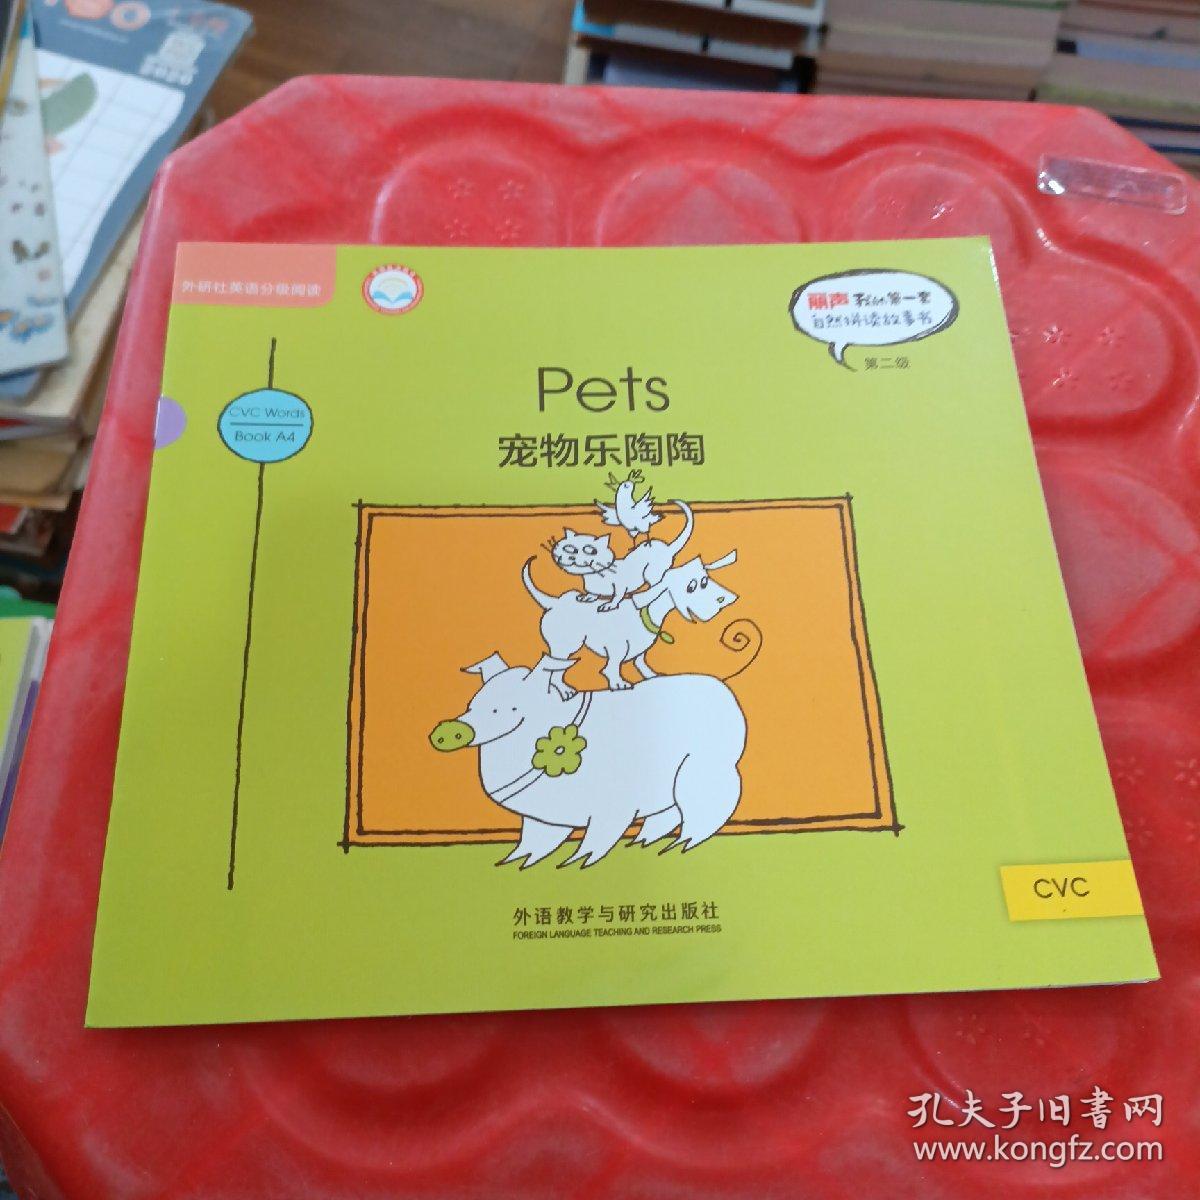 丽声我的第一套
自然拼读故事书
第二级
Pets
宠物乐陶陶